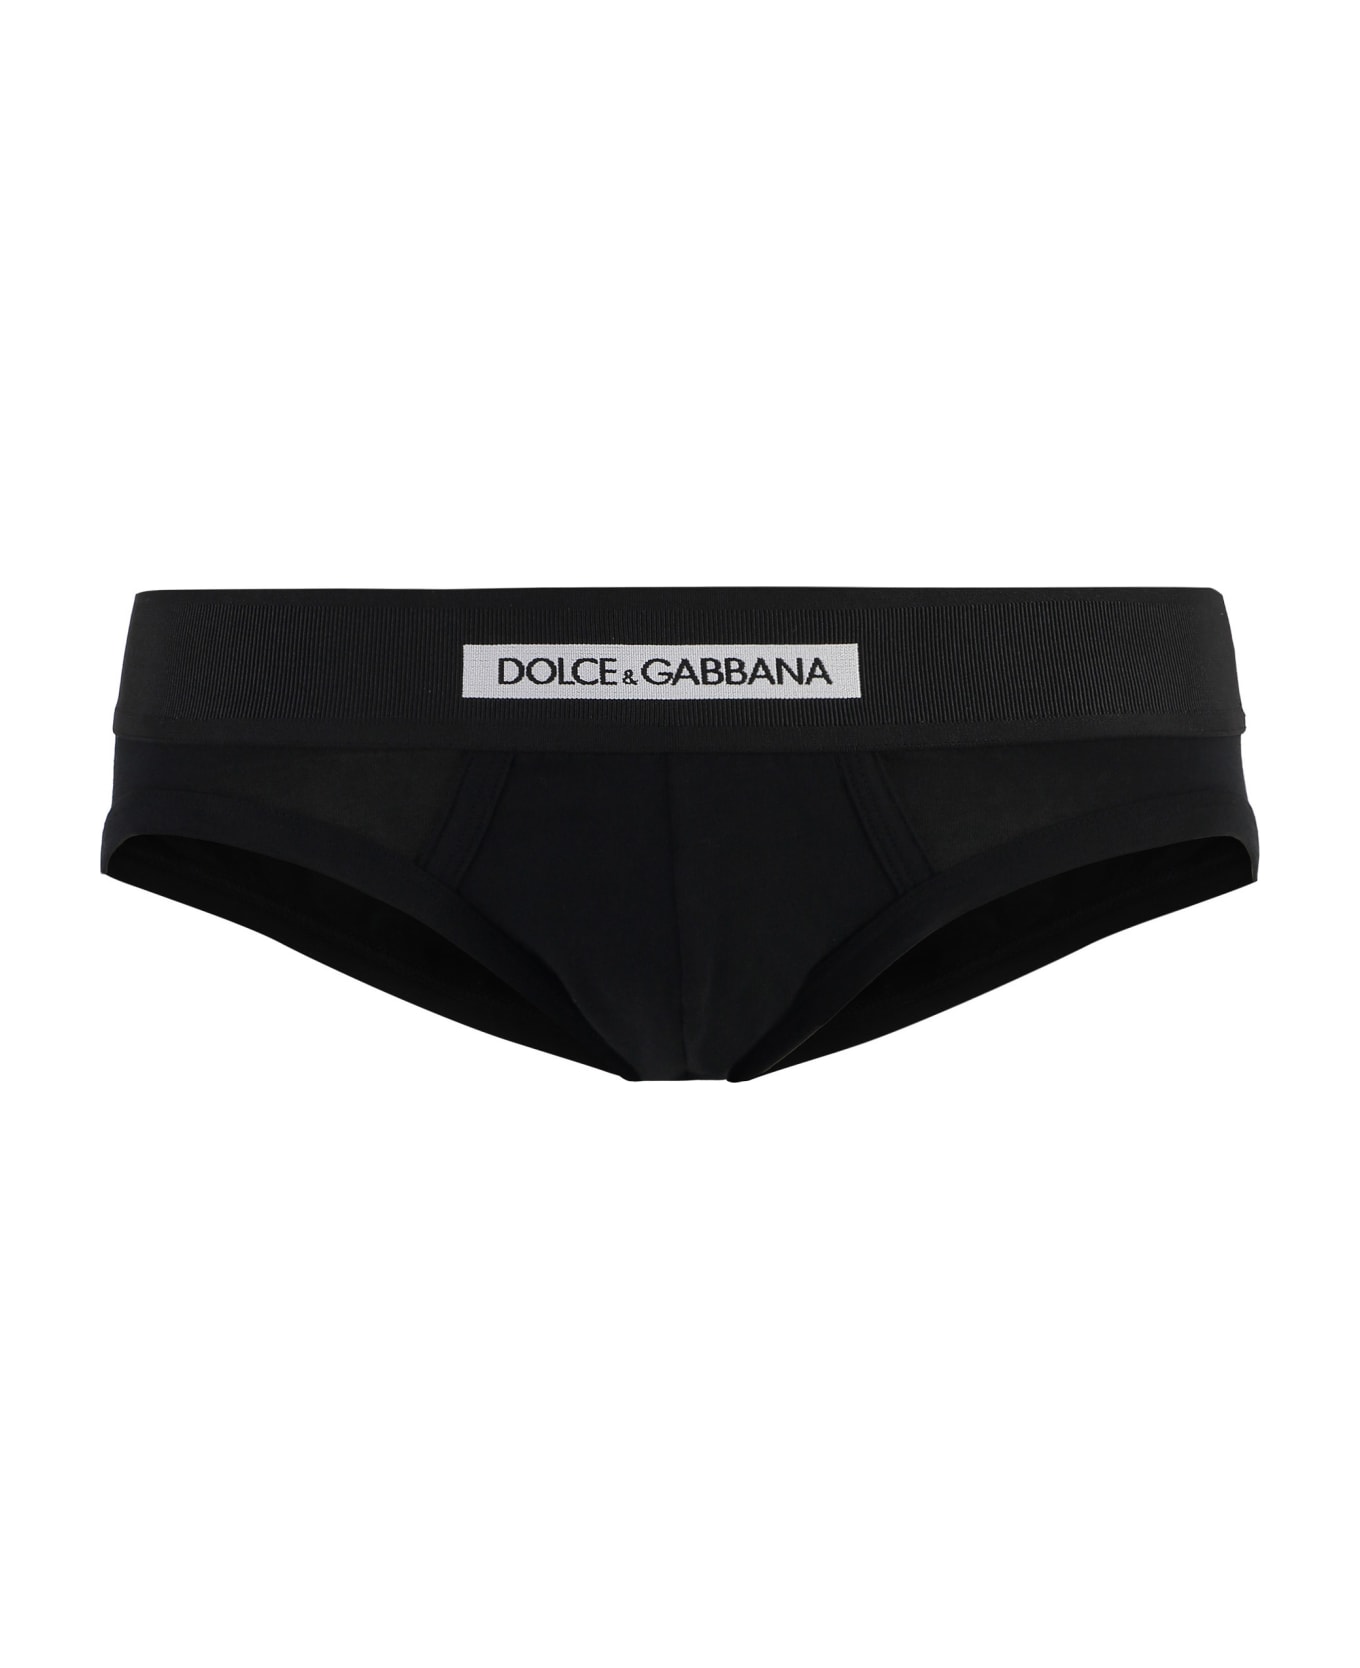 Dolce & Gabbana Plain Color Briefs - BLACK